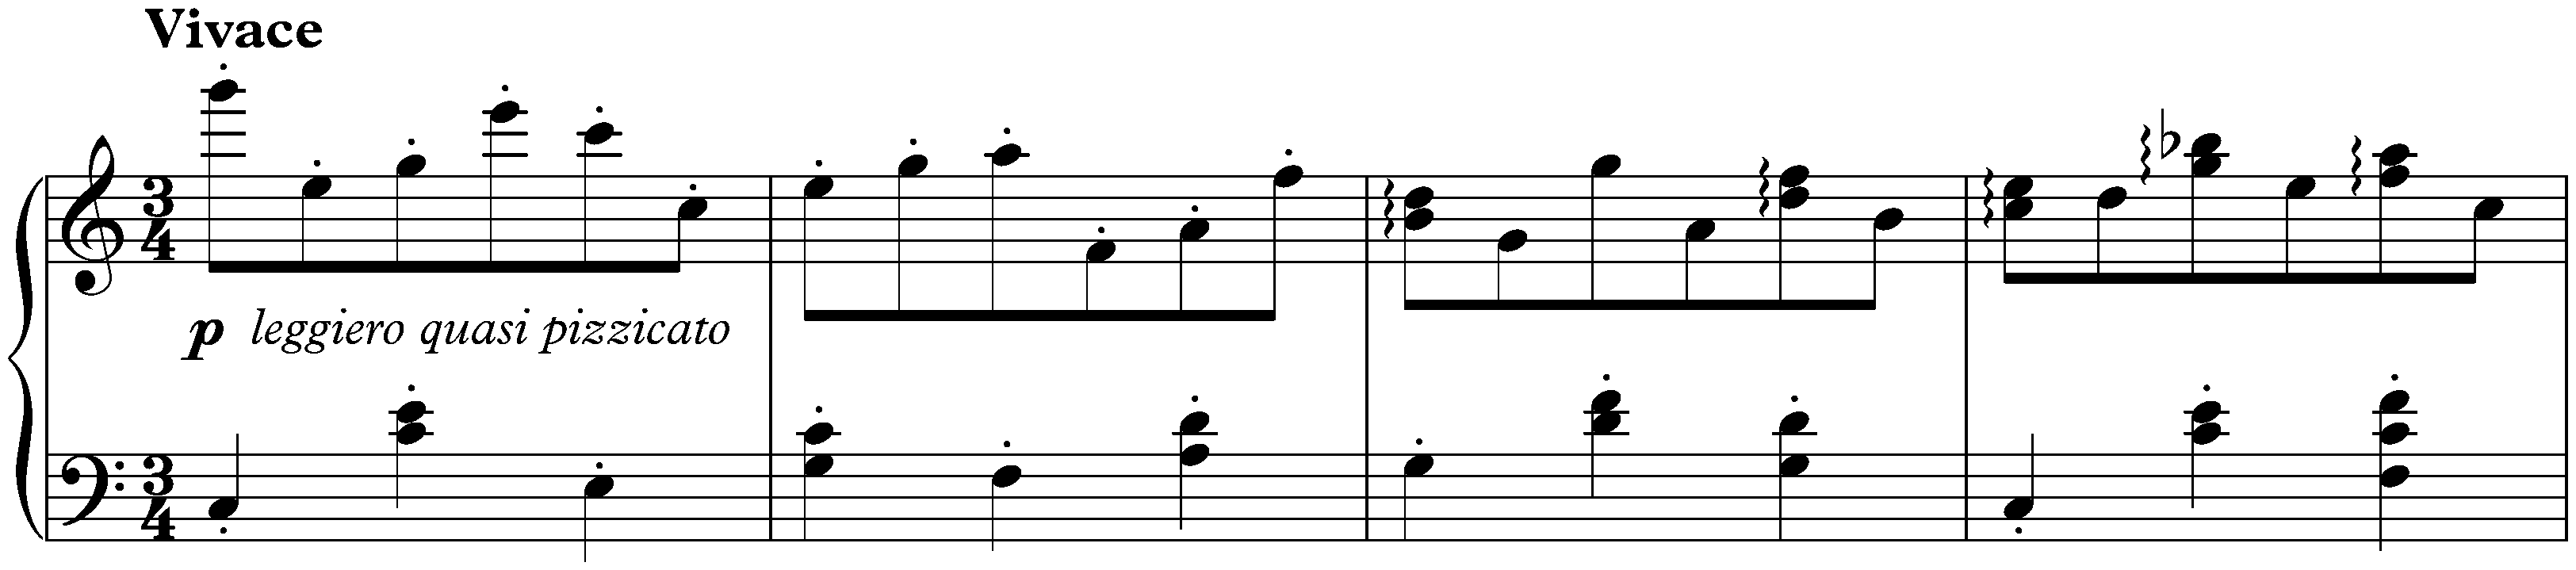 Sixteen Waltzes, op. 39; 6. C major (simplified version)